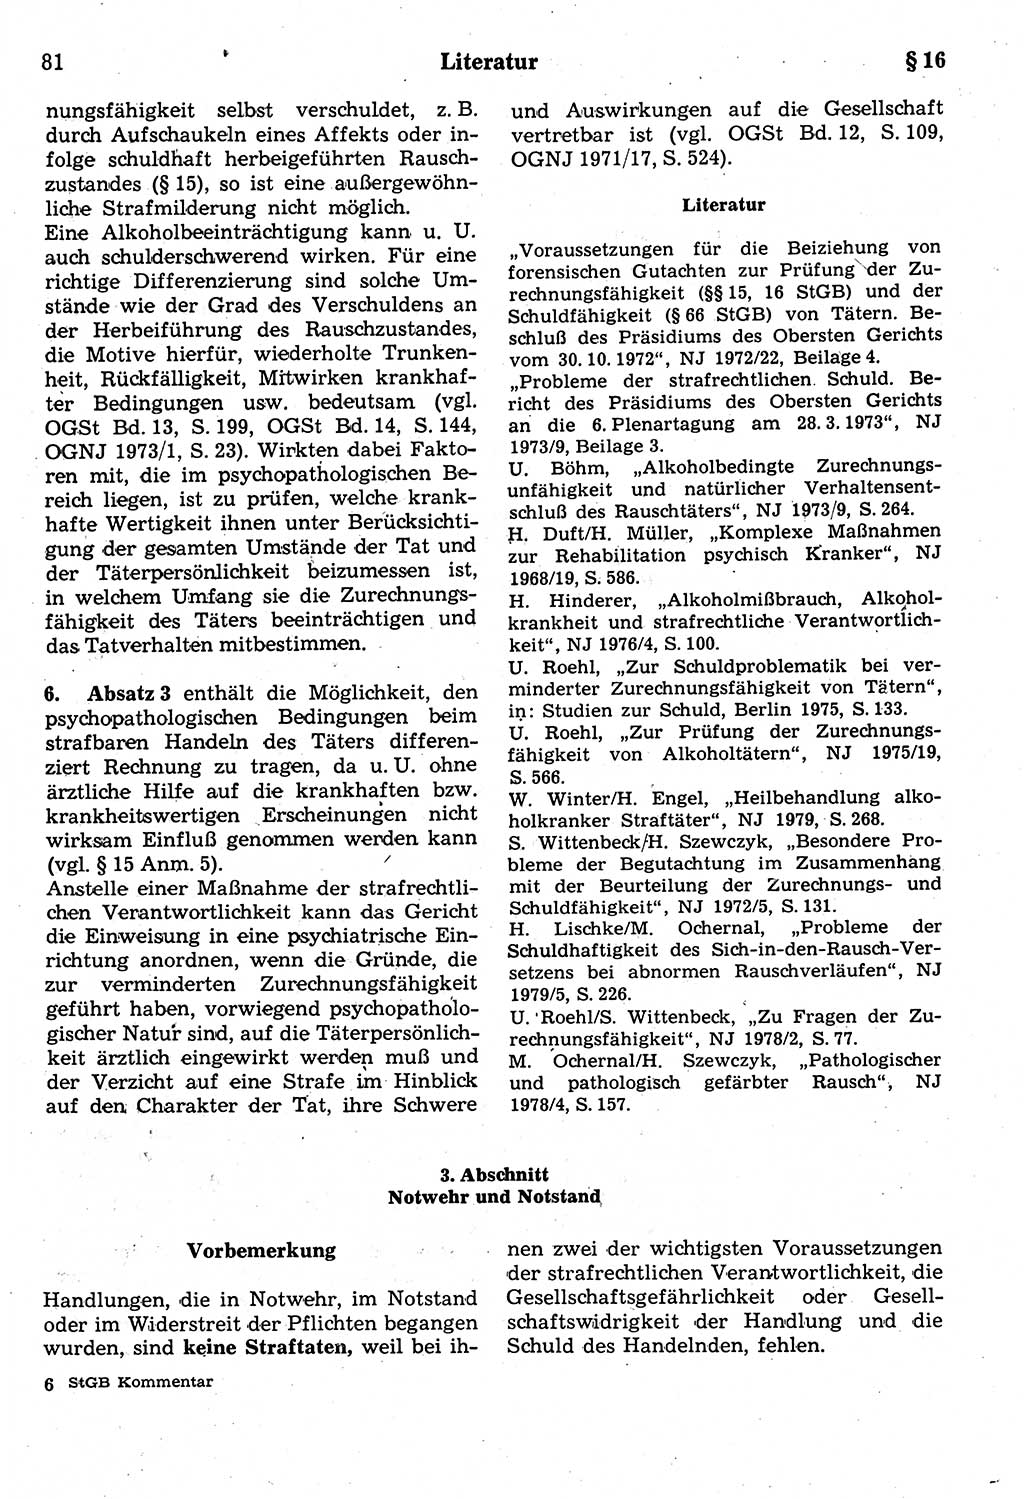 Strafrecht der Deutschen Demokratischen Republik (DDR), Kommentar zum Strafgesetzbuch (StGB) 1987, Seite 81 (Strafr. DDR Komm. StGB 1987, S. 81)